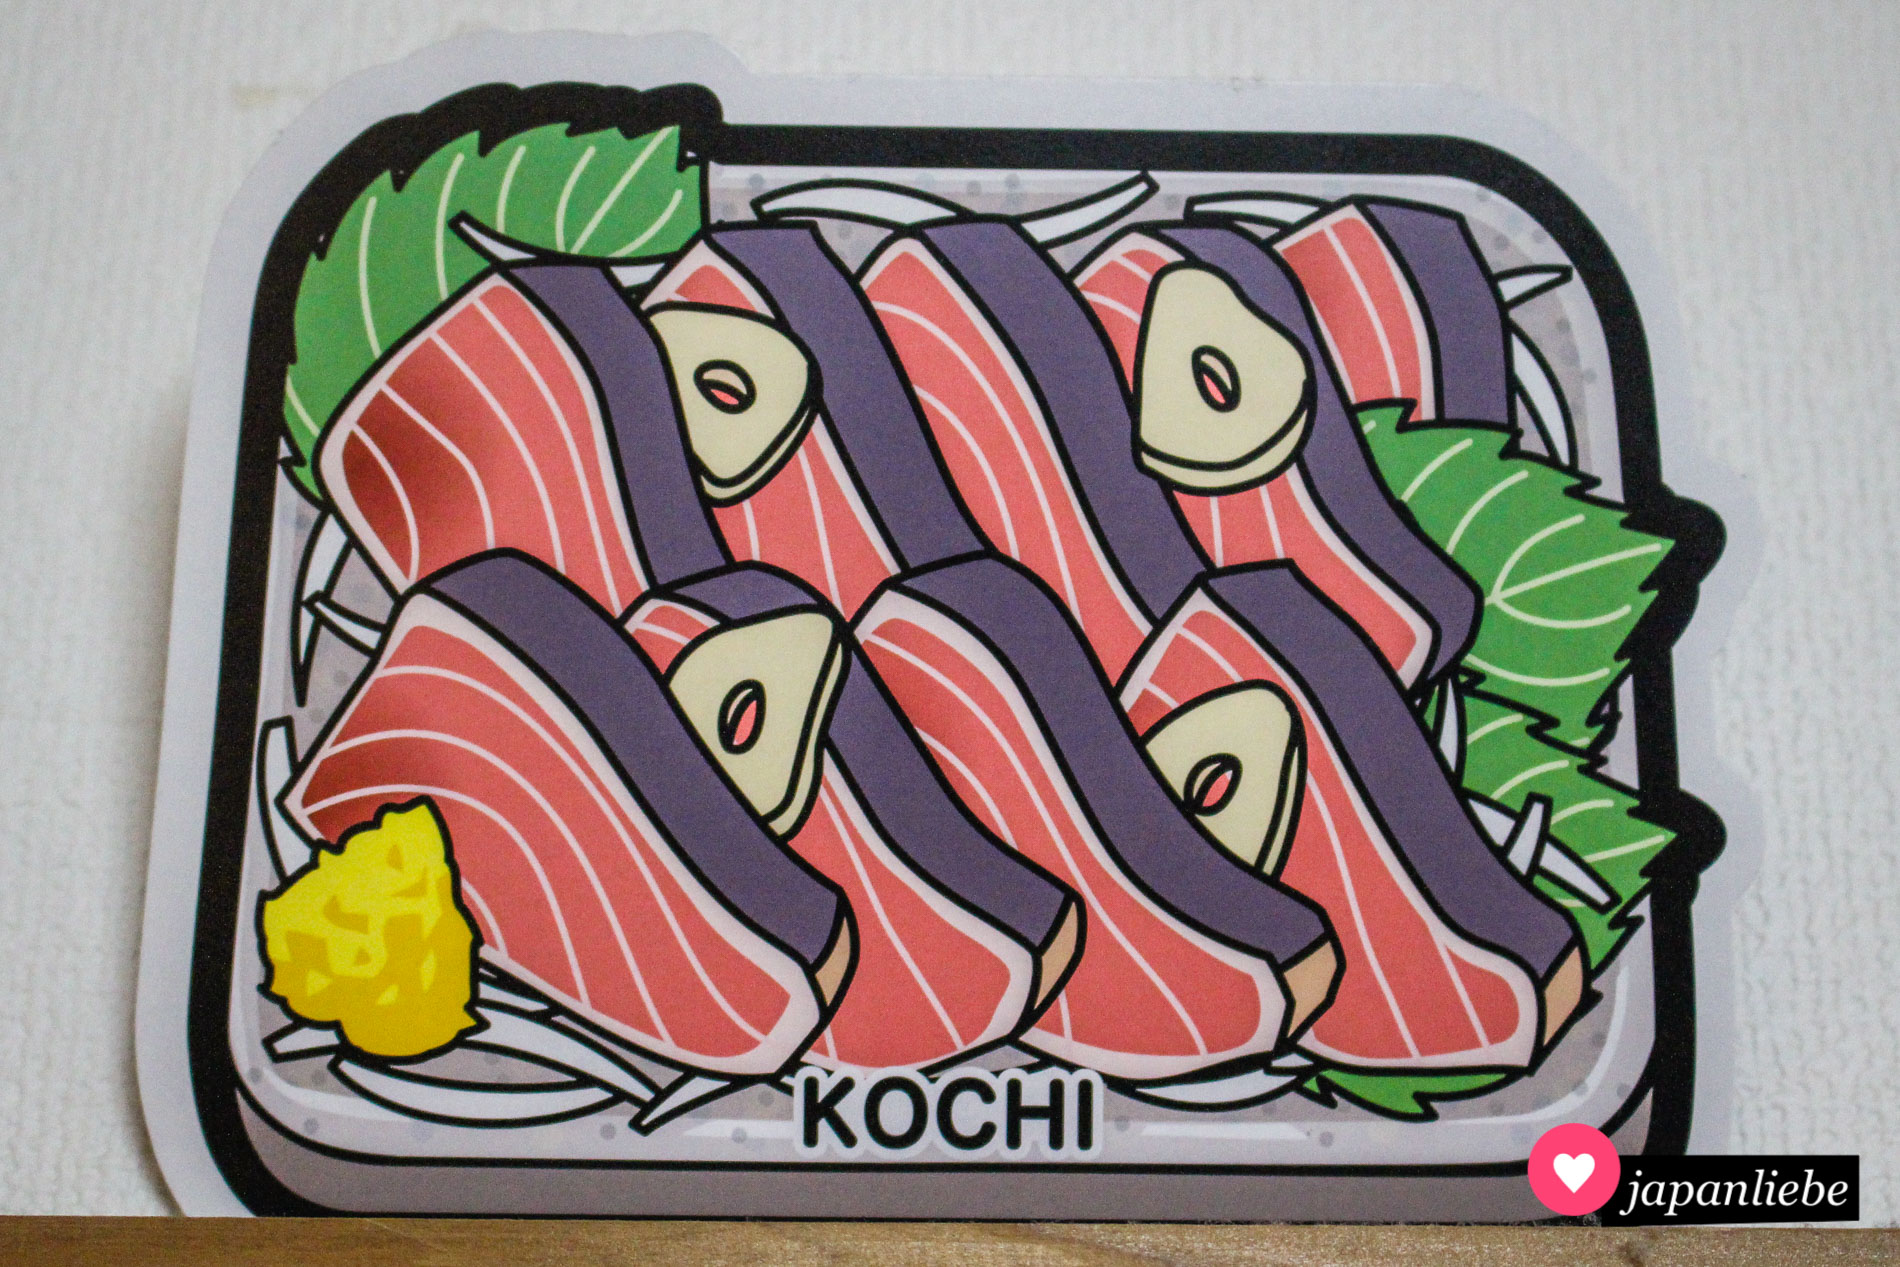 Dieses gotochi-Postkarte zeigt eine lokale Spezialität der Präfektur Kōchi: Shimizu-Makrelen-Sashimi.